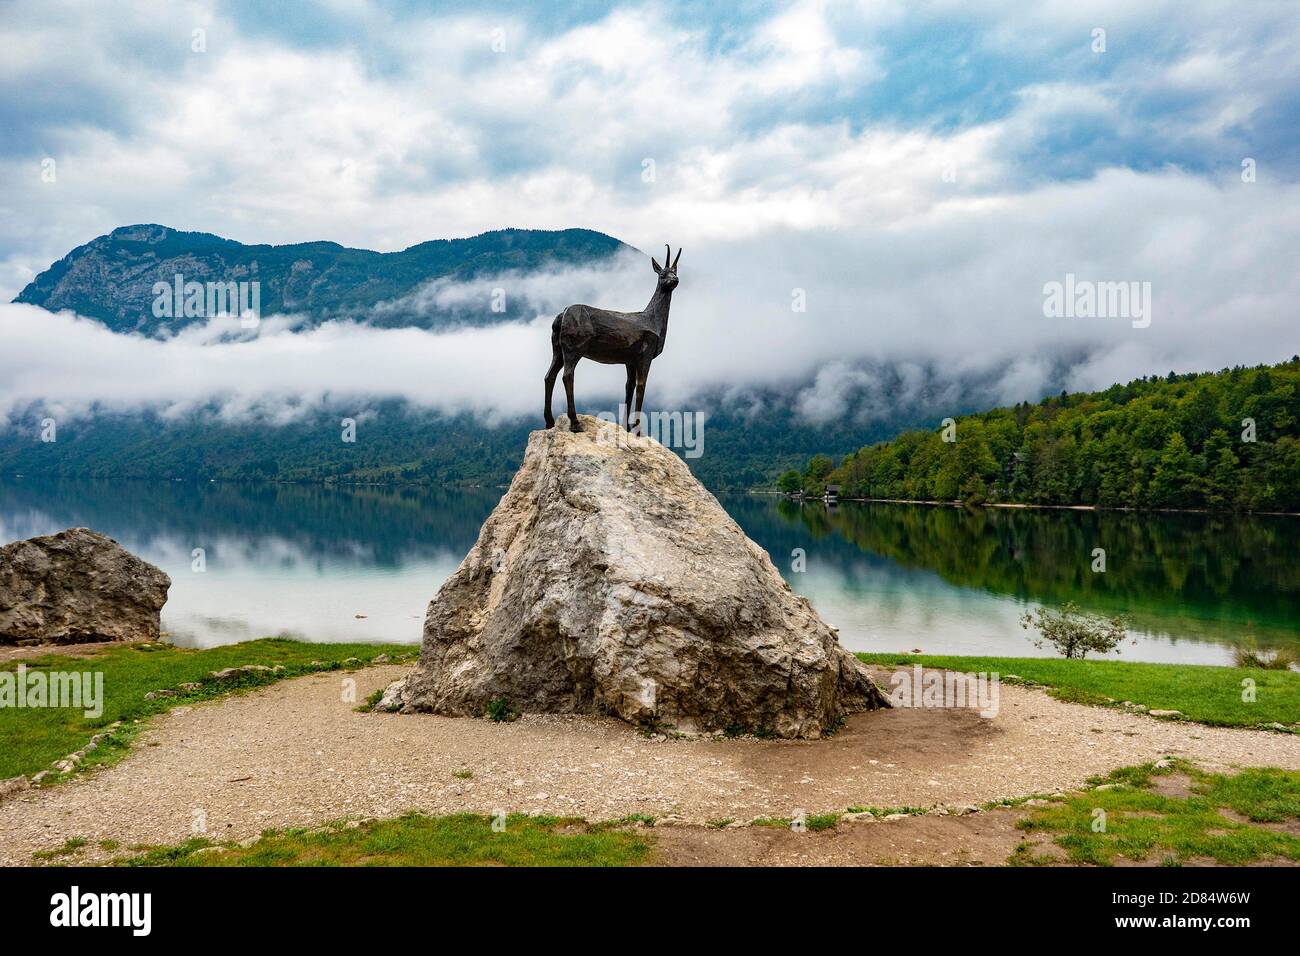 SLOVÉNIE,Lac de Bohinjskao, Ribcev Laz, Statue du cerf mystique Zlatorog (Goldhorn) au bord du lac rappelle un conte de fées bien connu Banque D'Images